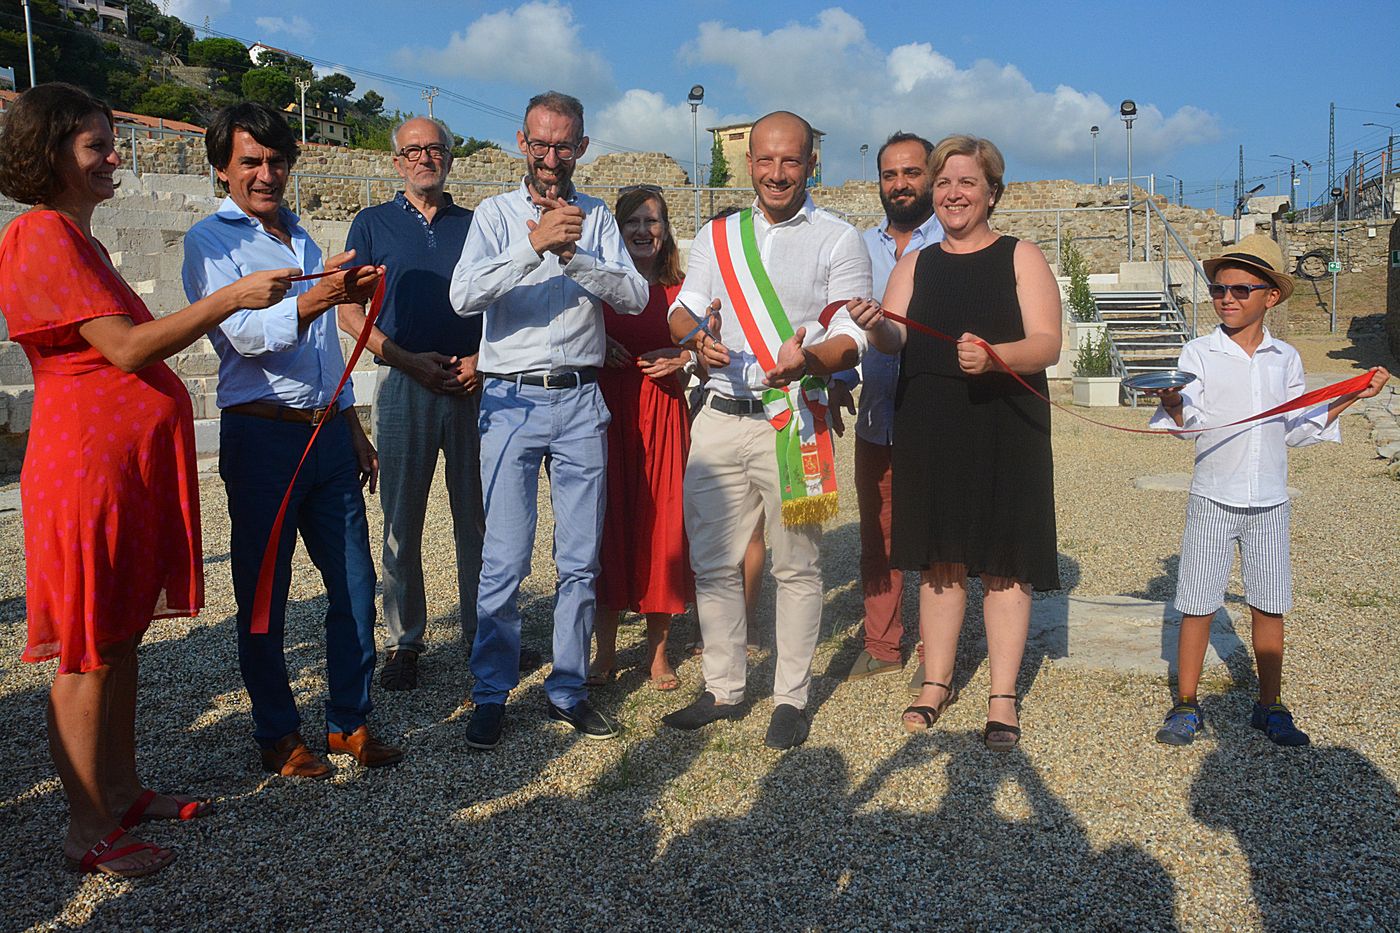 Teatro romano Ventimiglia inaugurazione apertura 7 agosto 2018_16_risultato